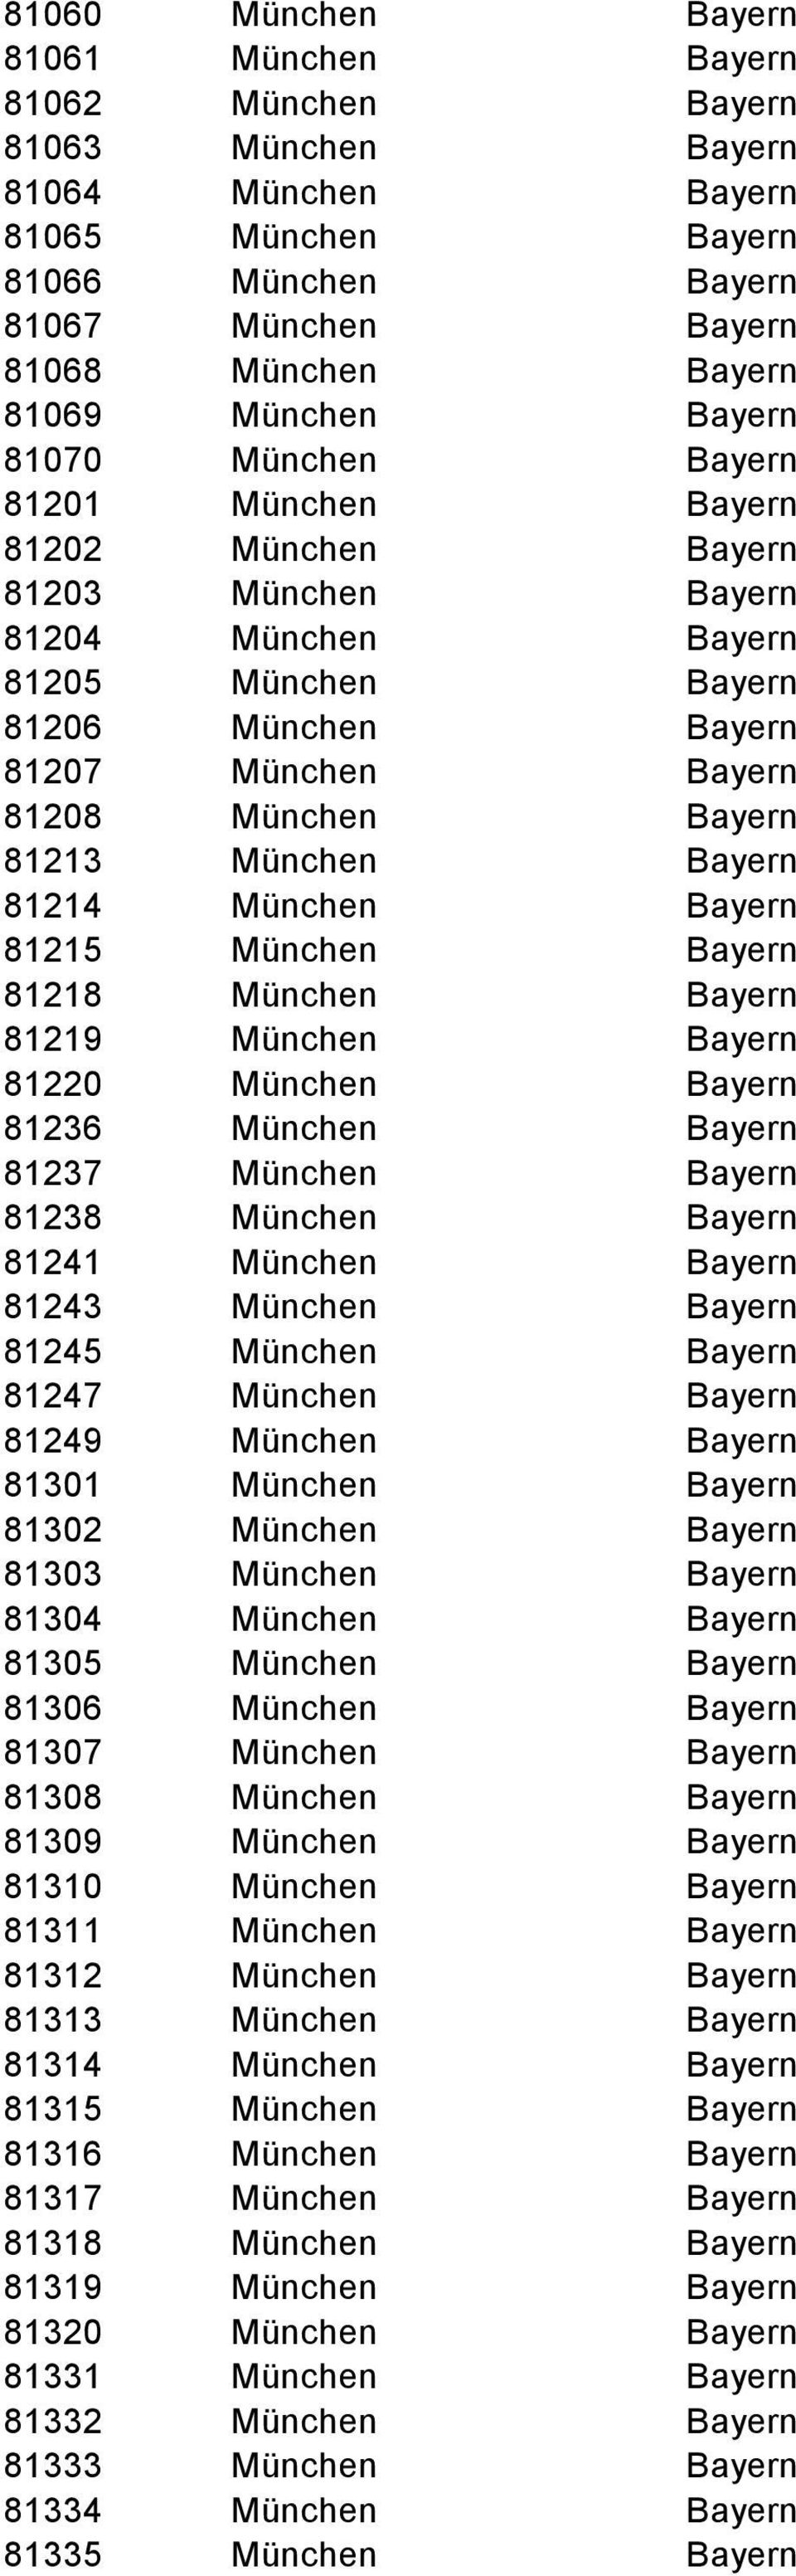 Bayern 81213 München Bayern 81214 München Bayern 81215 München Bayern 81218 München Bayern 81219 München Bayern 81220 München Bayern 81236 München Bayern 81237 München Bayern 81238 München Bayern